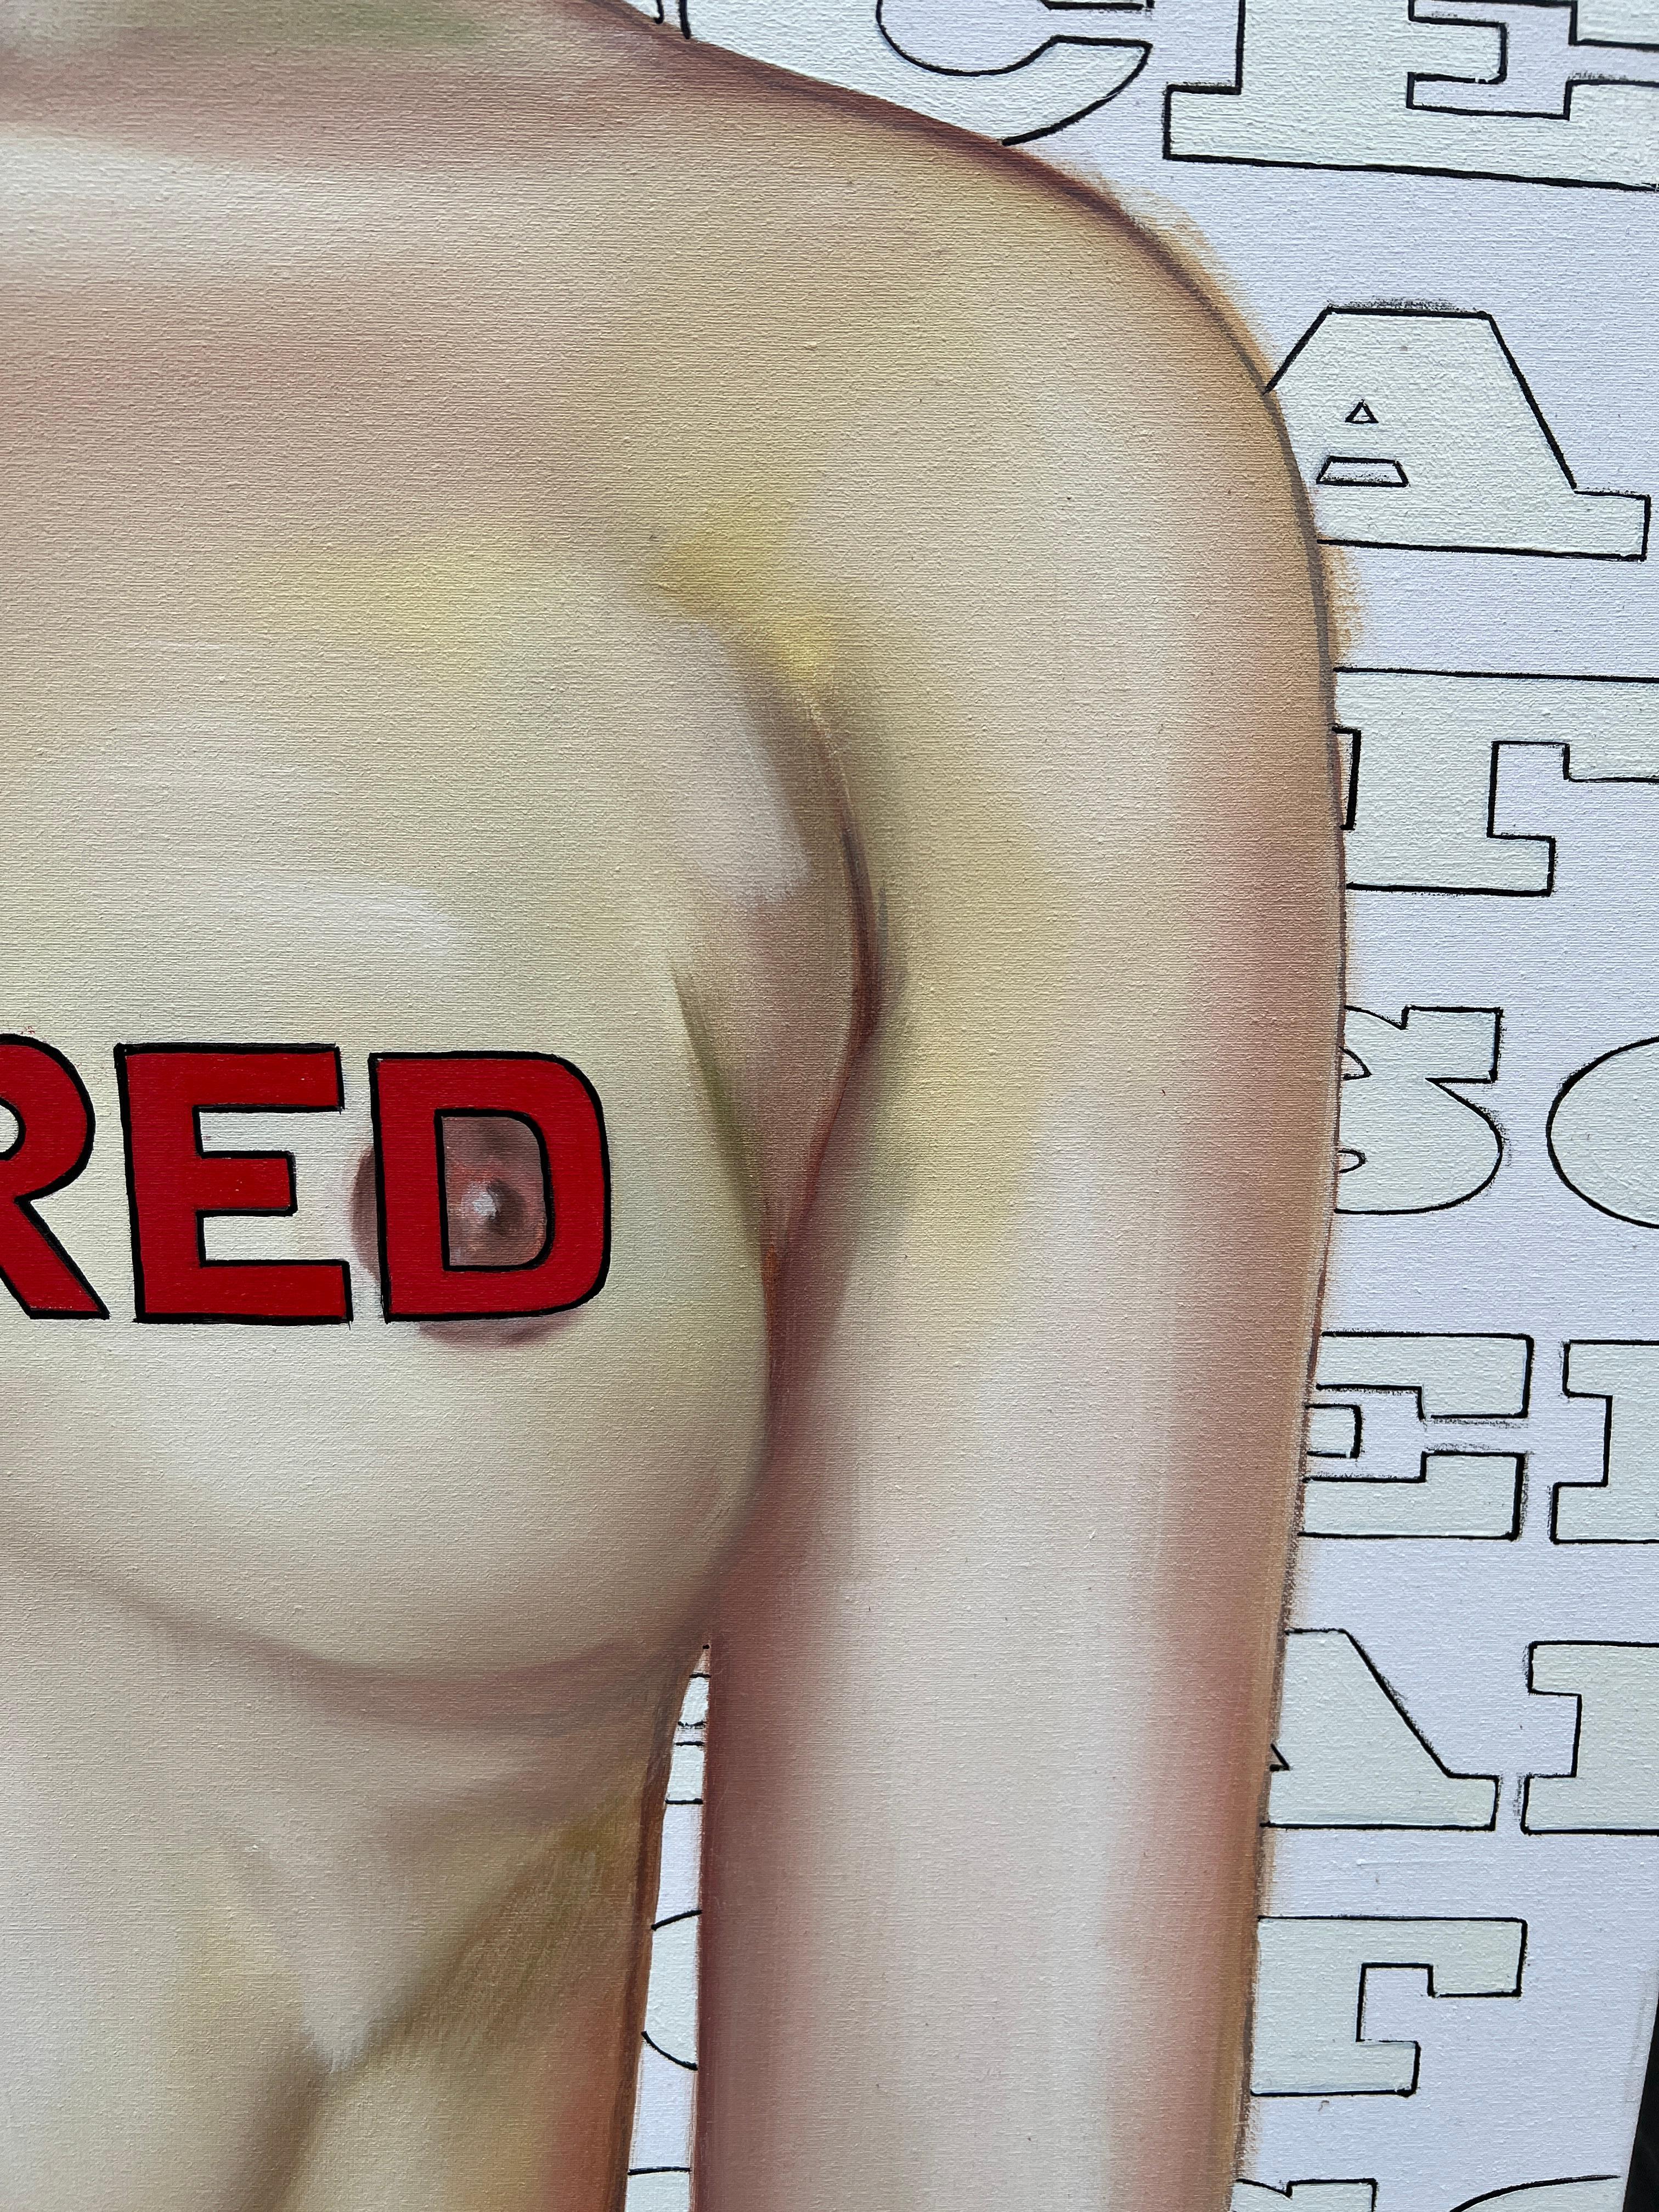 L'art n'est pas obscene  - Beige Nude Painting par Andres Conde